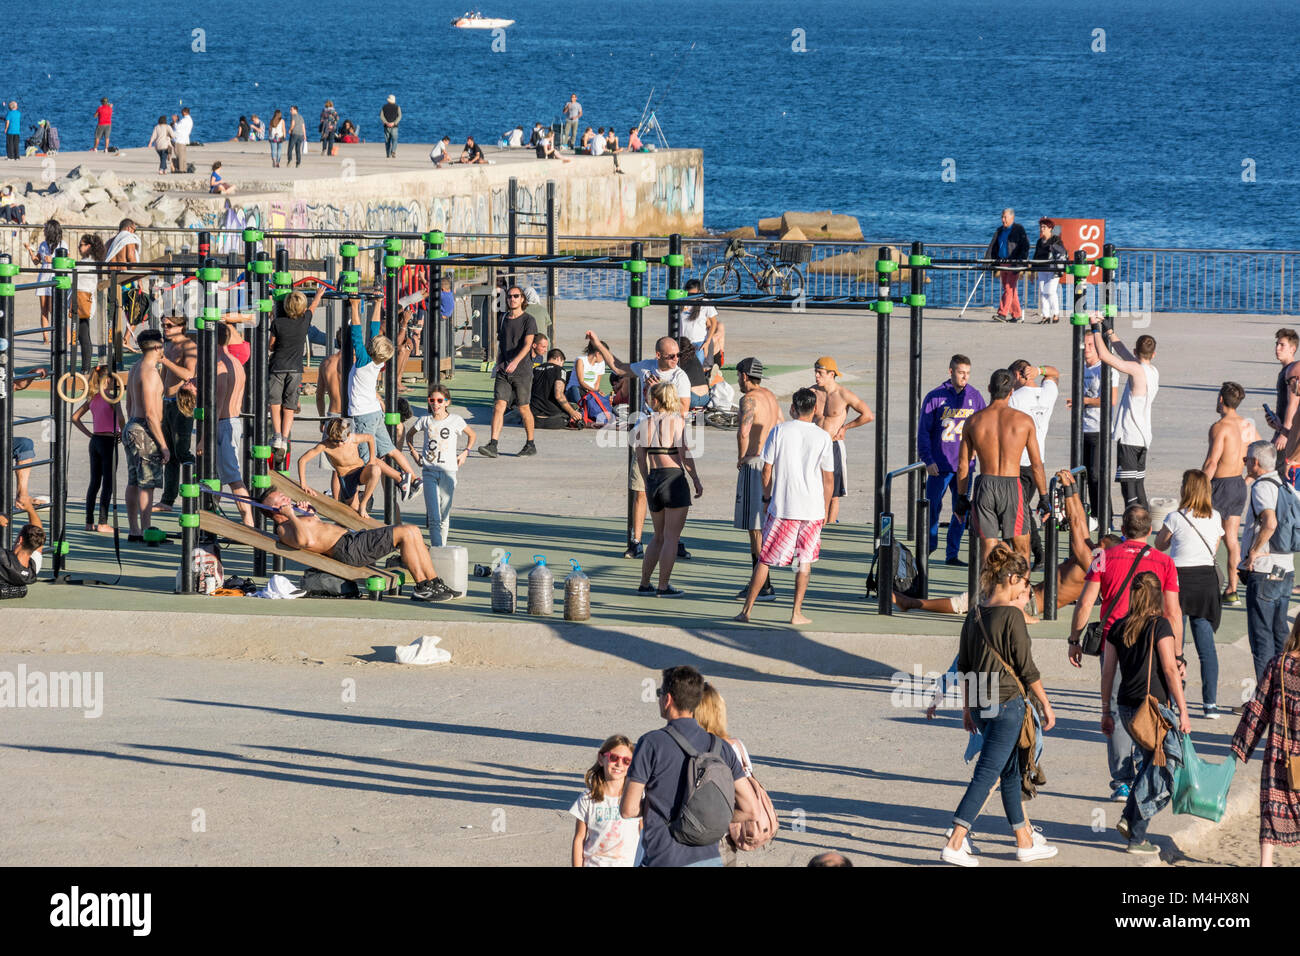 Fitnessgeräte, Turnstangen am Strand von Barcelona an einem Sonntag mit regem Besuch Stock Photo